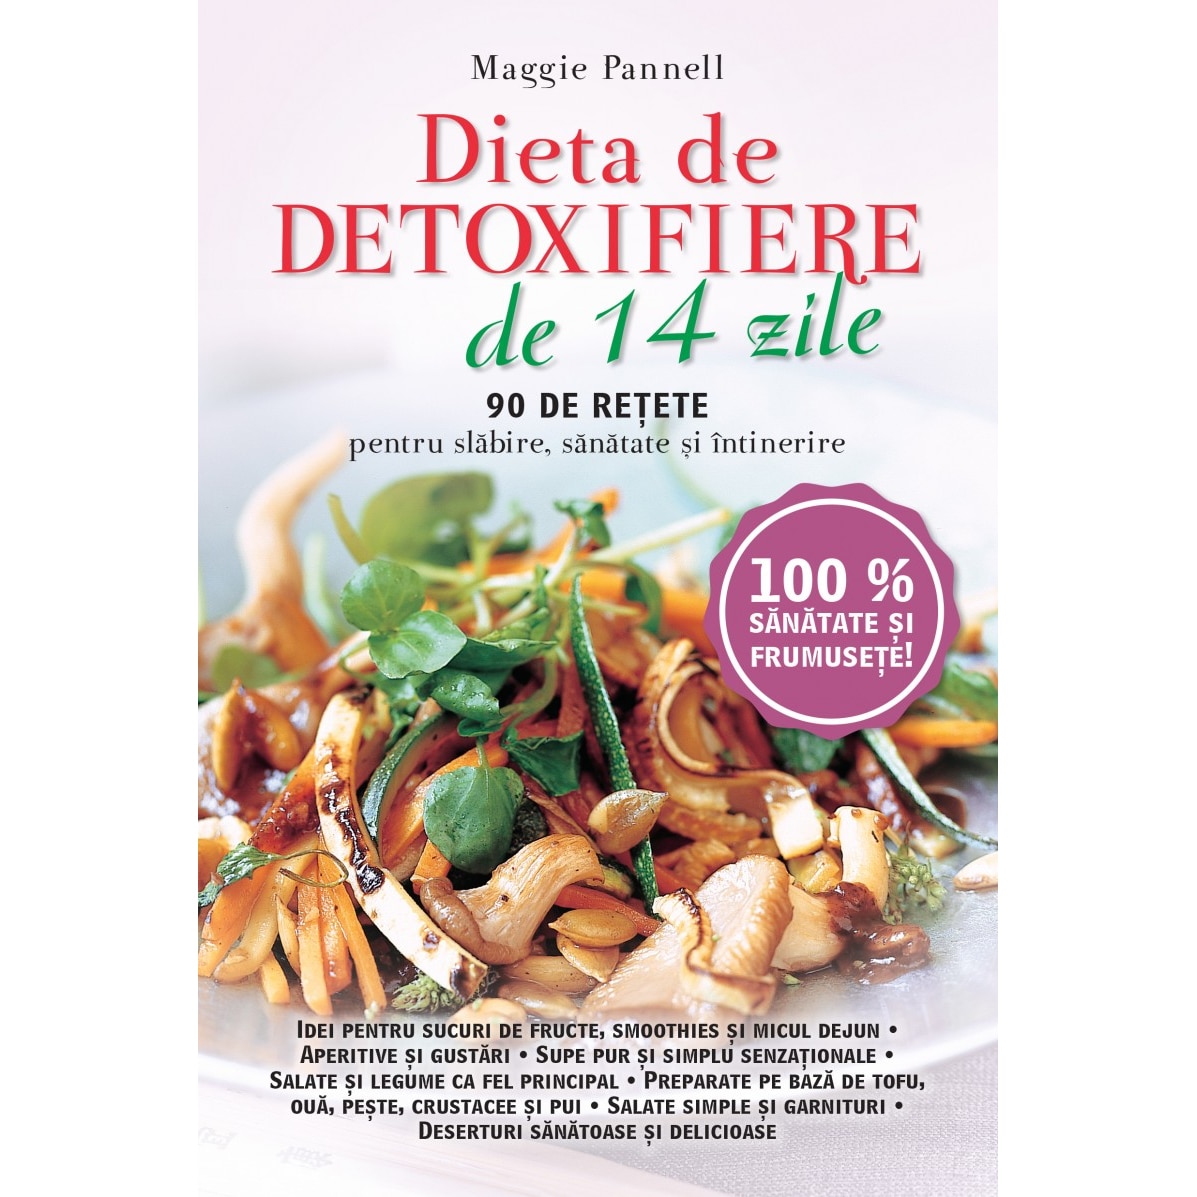 Slabiti 10 kilograme in 21 de zile - dieta de detoxifiere Martha Vineyard, Detoxifiere 2 saptamani